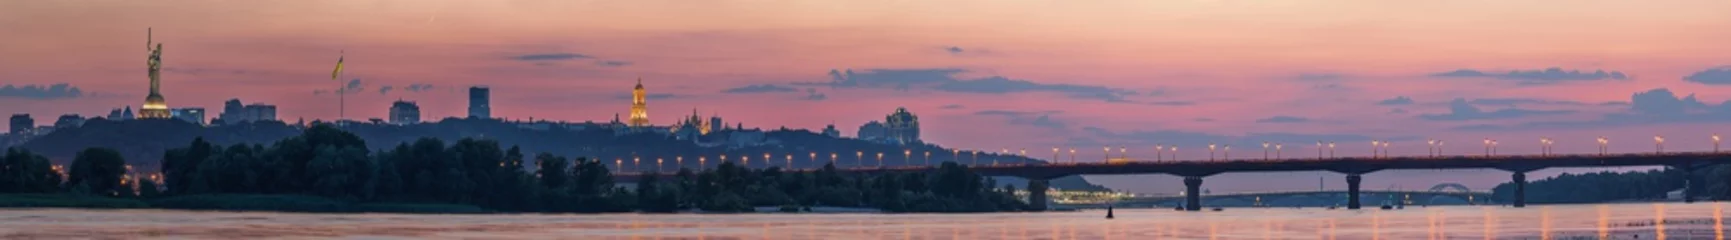 Wandcirkels tuinposter Uitzicht op Kiev Pechersk Lavra, Motherland Monument, Kiev bruggen en de rivier de Dnjepr, na zonsondergang wordt een dunne halve maan aan de oranje hemel gezien. © underwaterstas